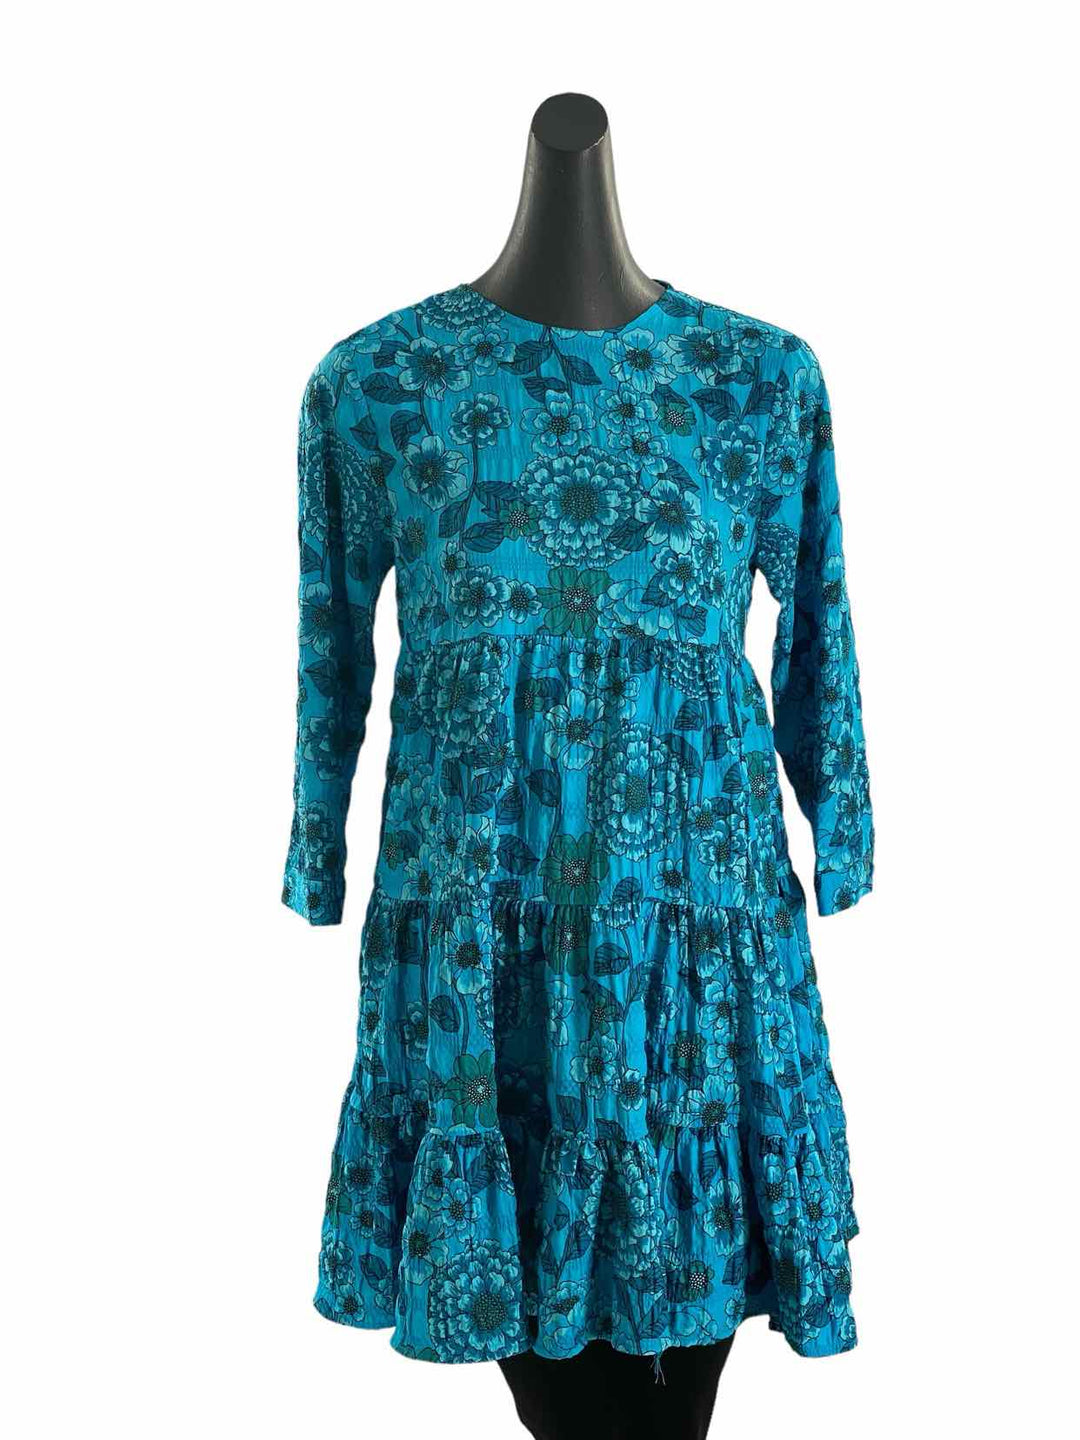 ZARA Size XS Blue Flowers Dress